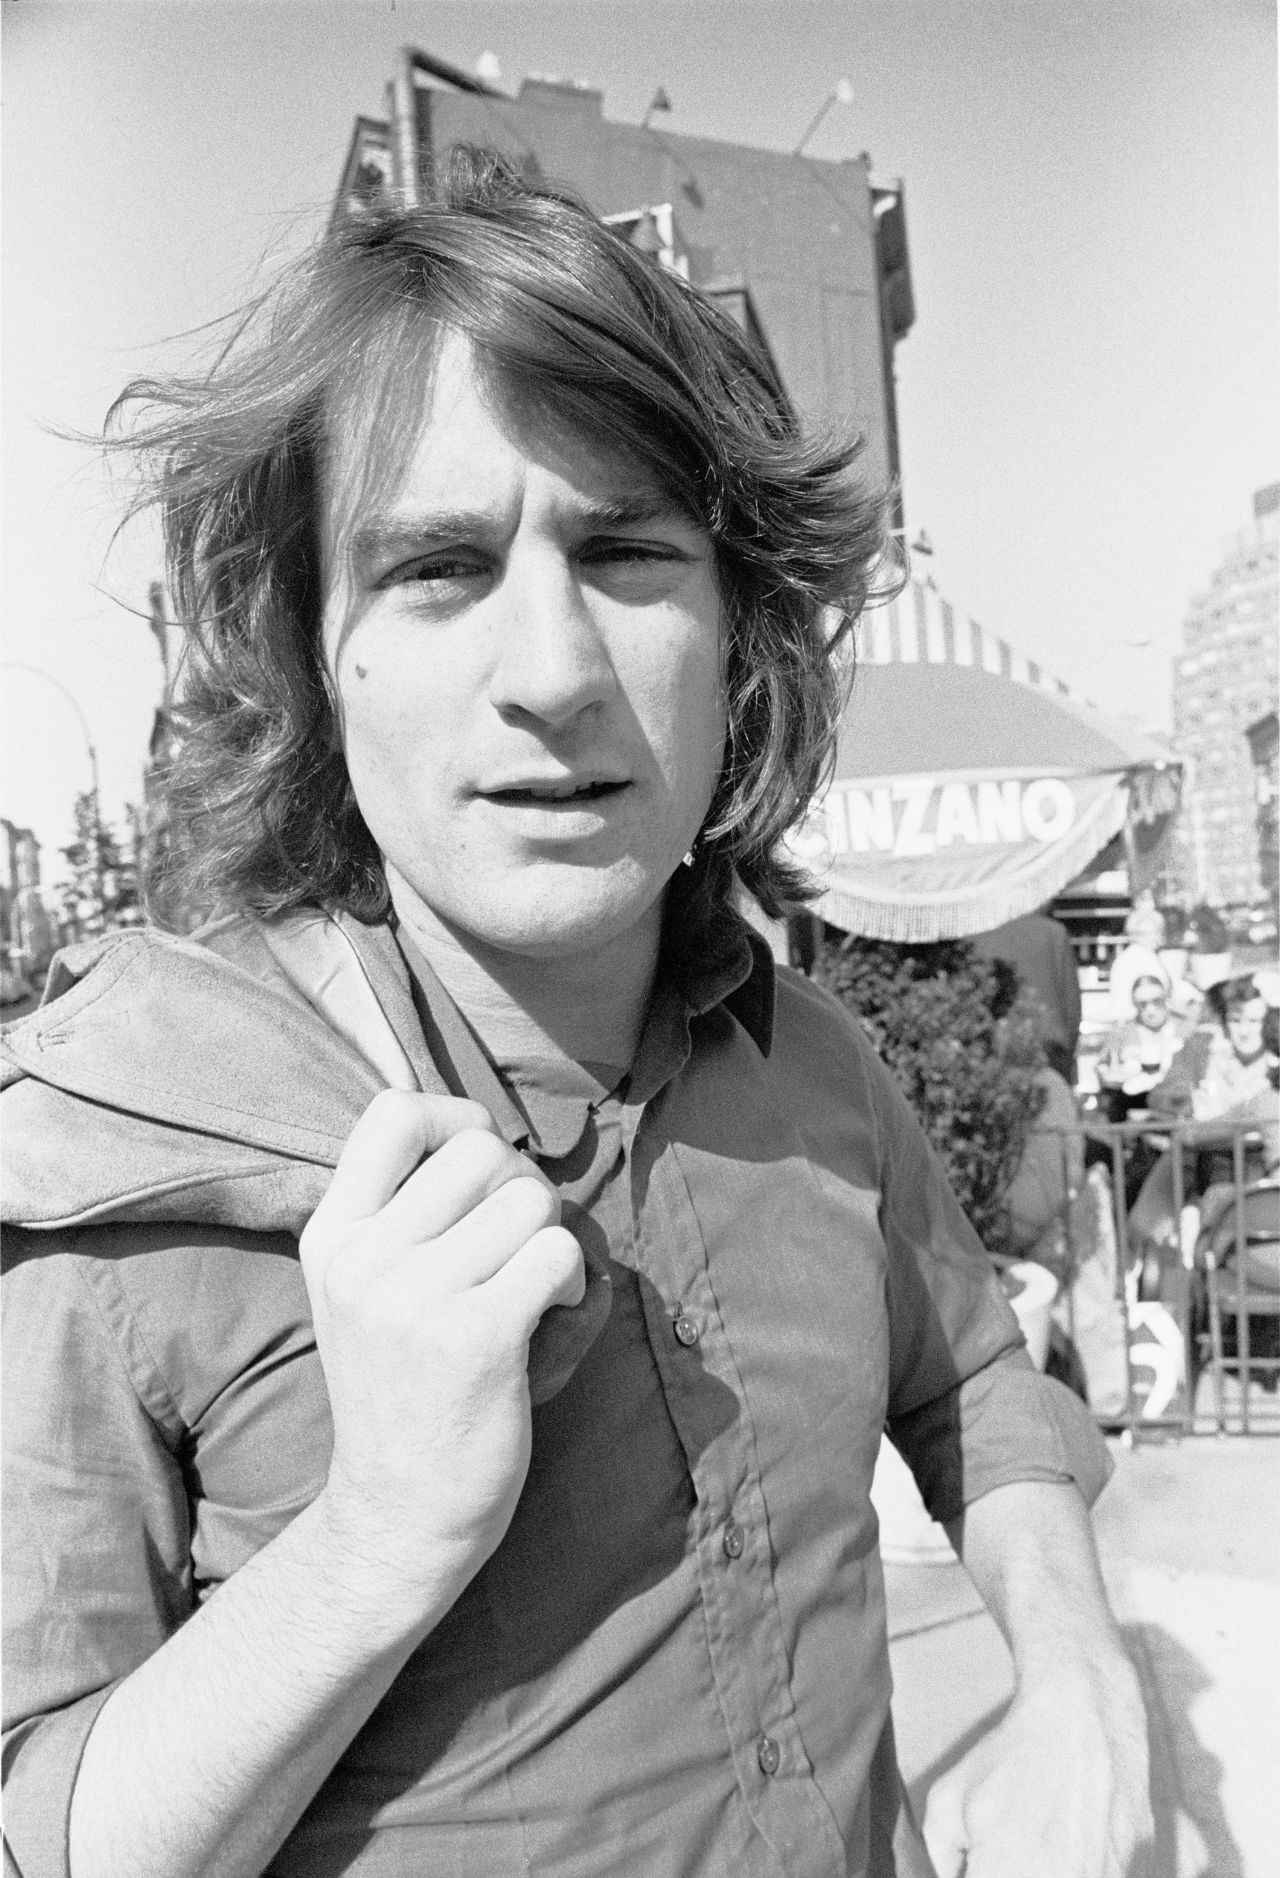 De Niro poses for a portrait in 1973.